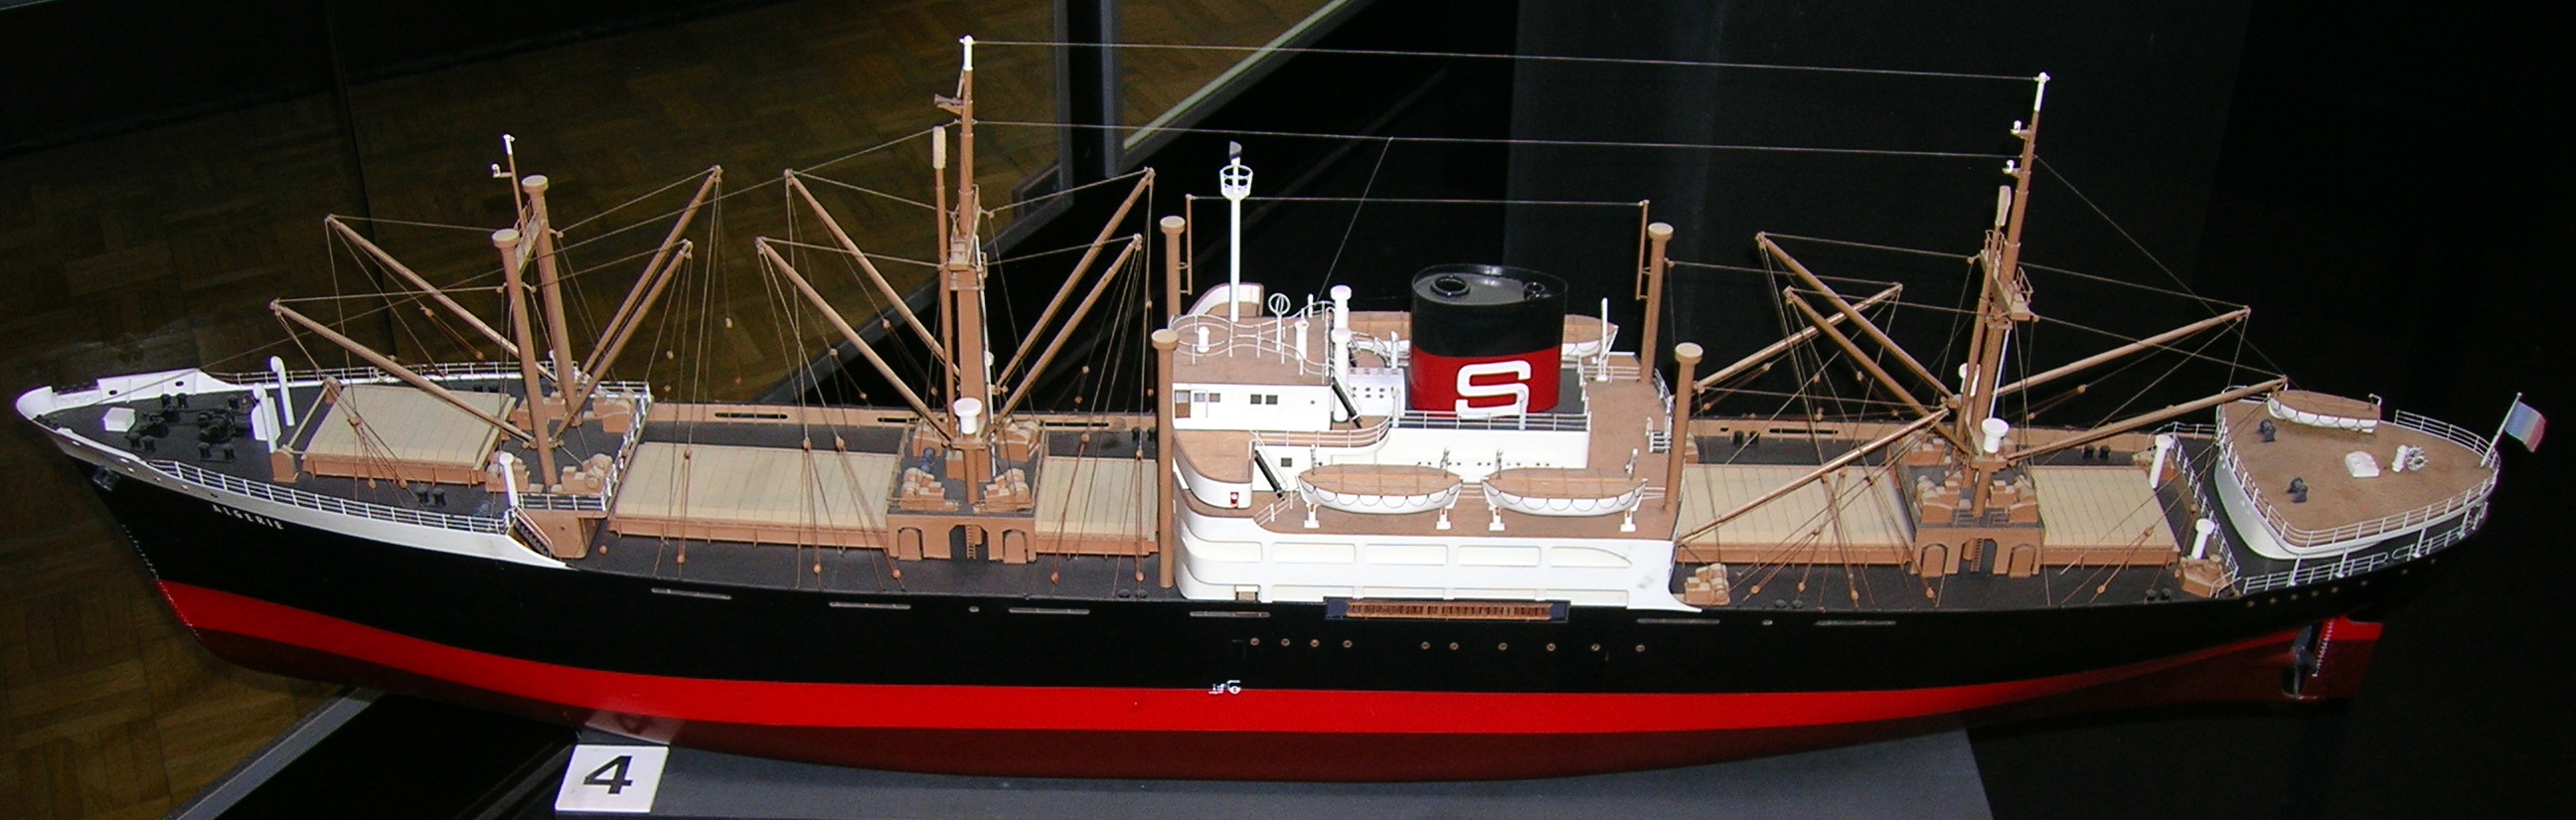 Algérie cargo ship model